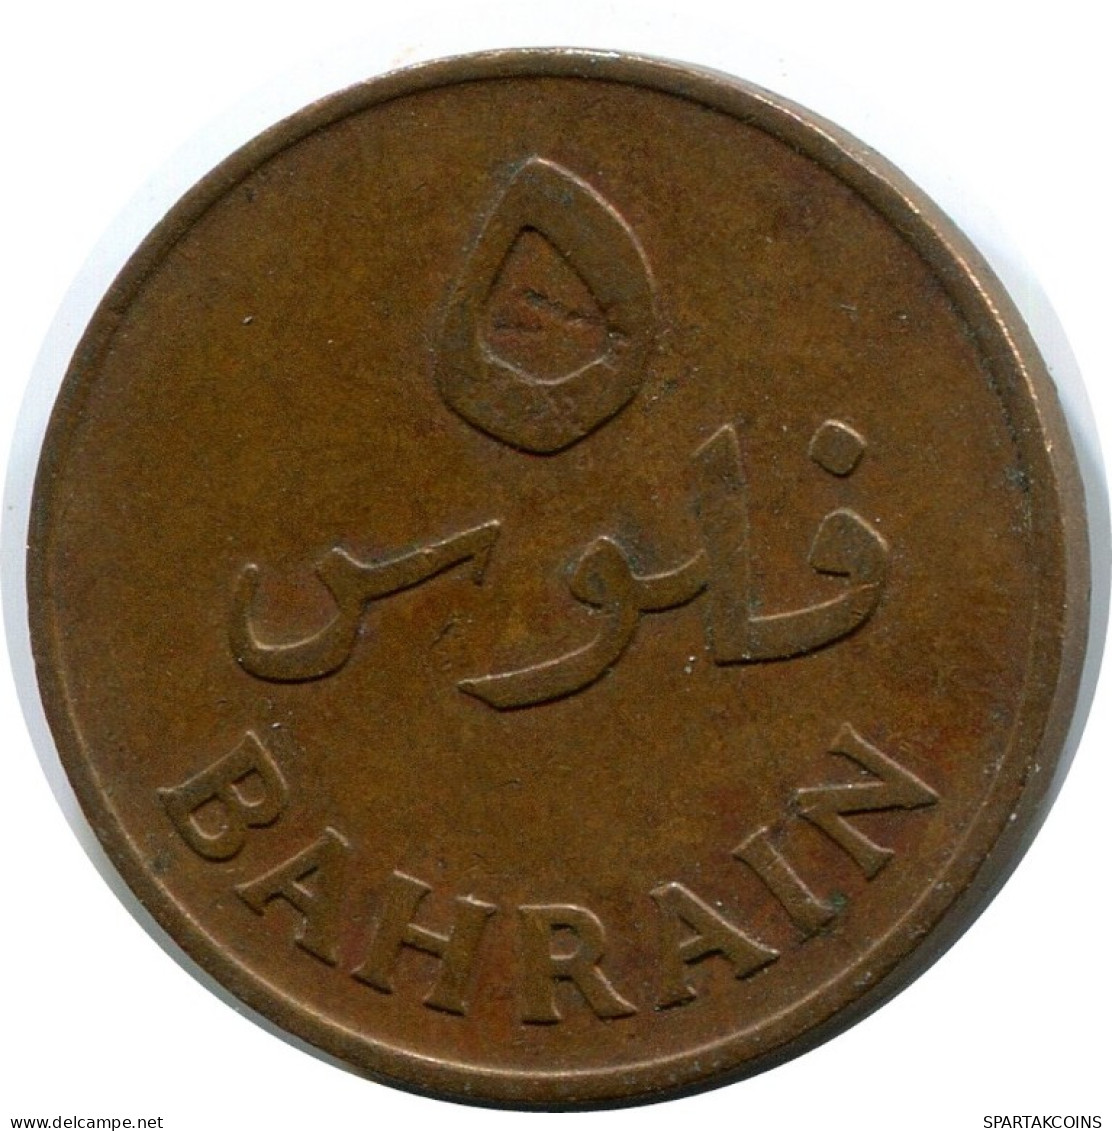 5 FILS 1965 BAHRAIN Islamic Coin #AK179.U.A - Bahreïn